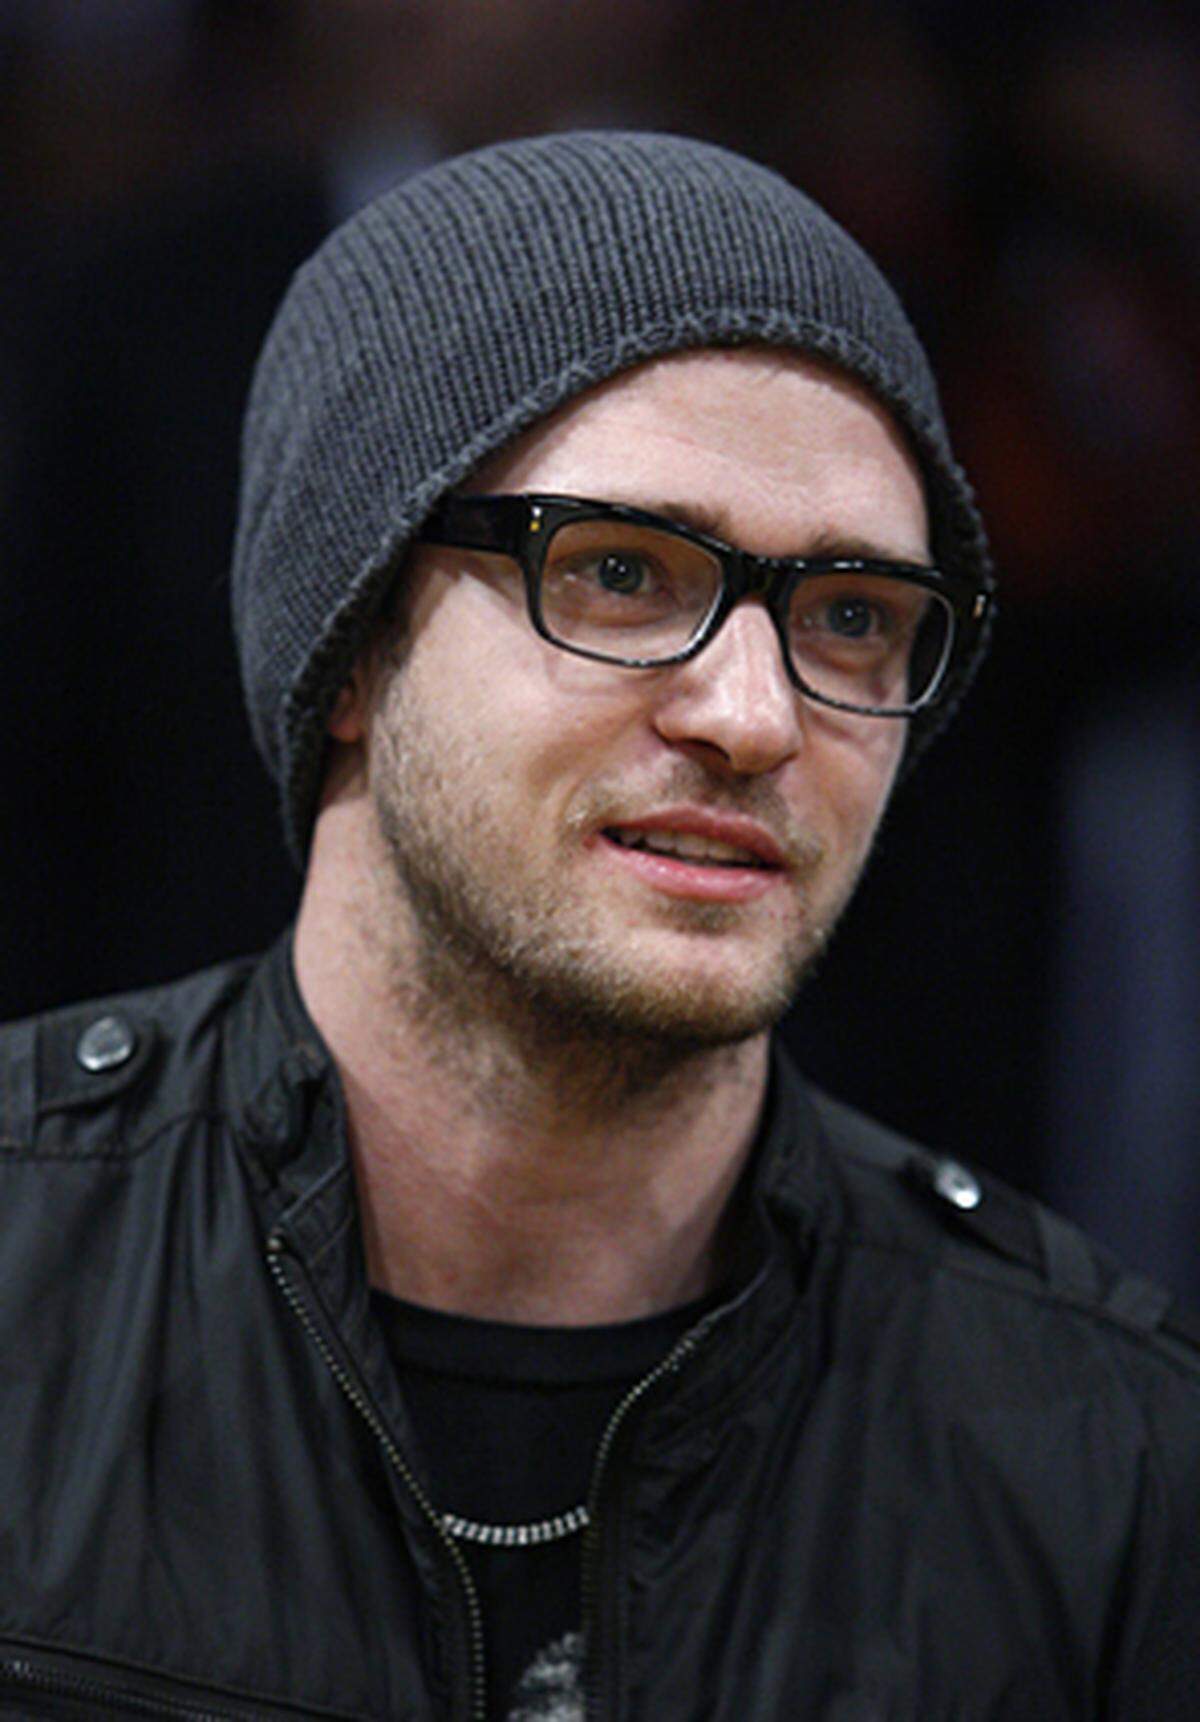 Dieses Schicksal teilt Justin Timberlake, seine Zwillingsschwester Laura starb kurz nach der Geburt. In seinen ersten "N'SYNC"-Alben widmete er ihr verschiedene Textzeilen.